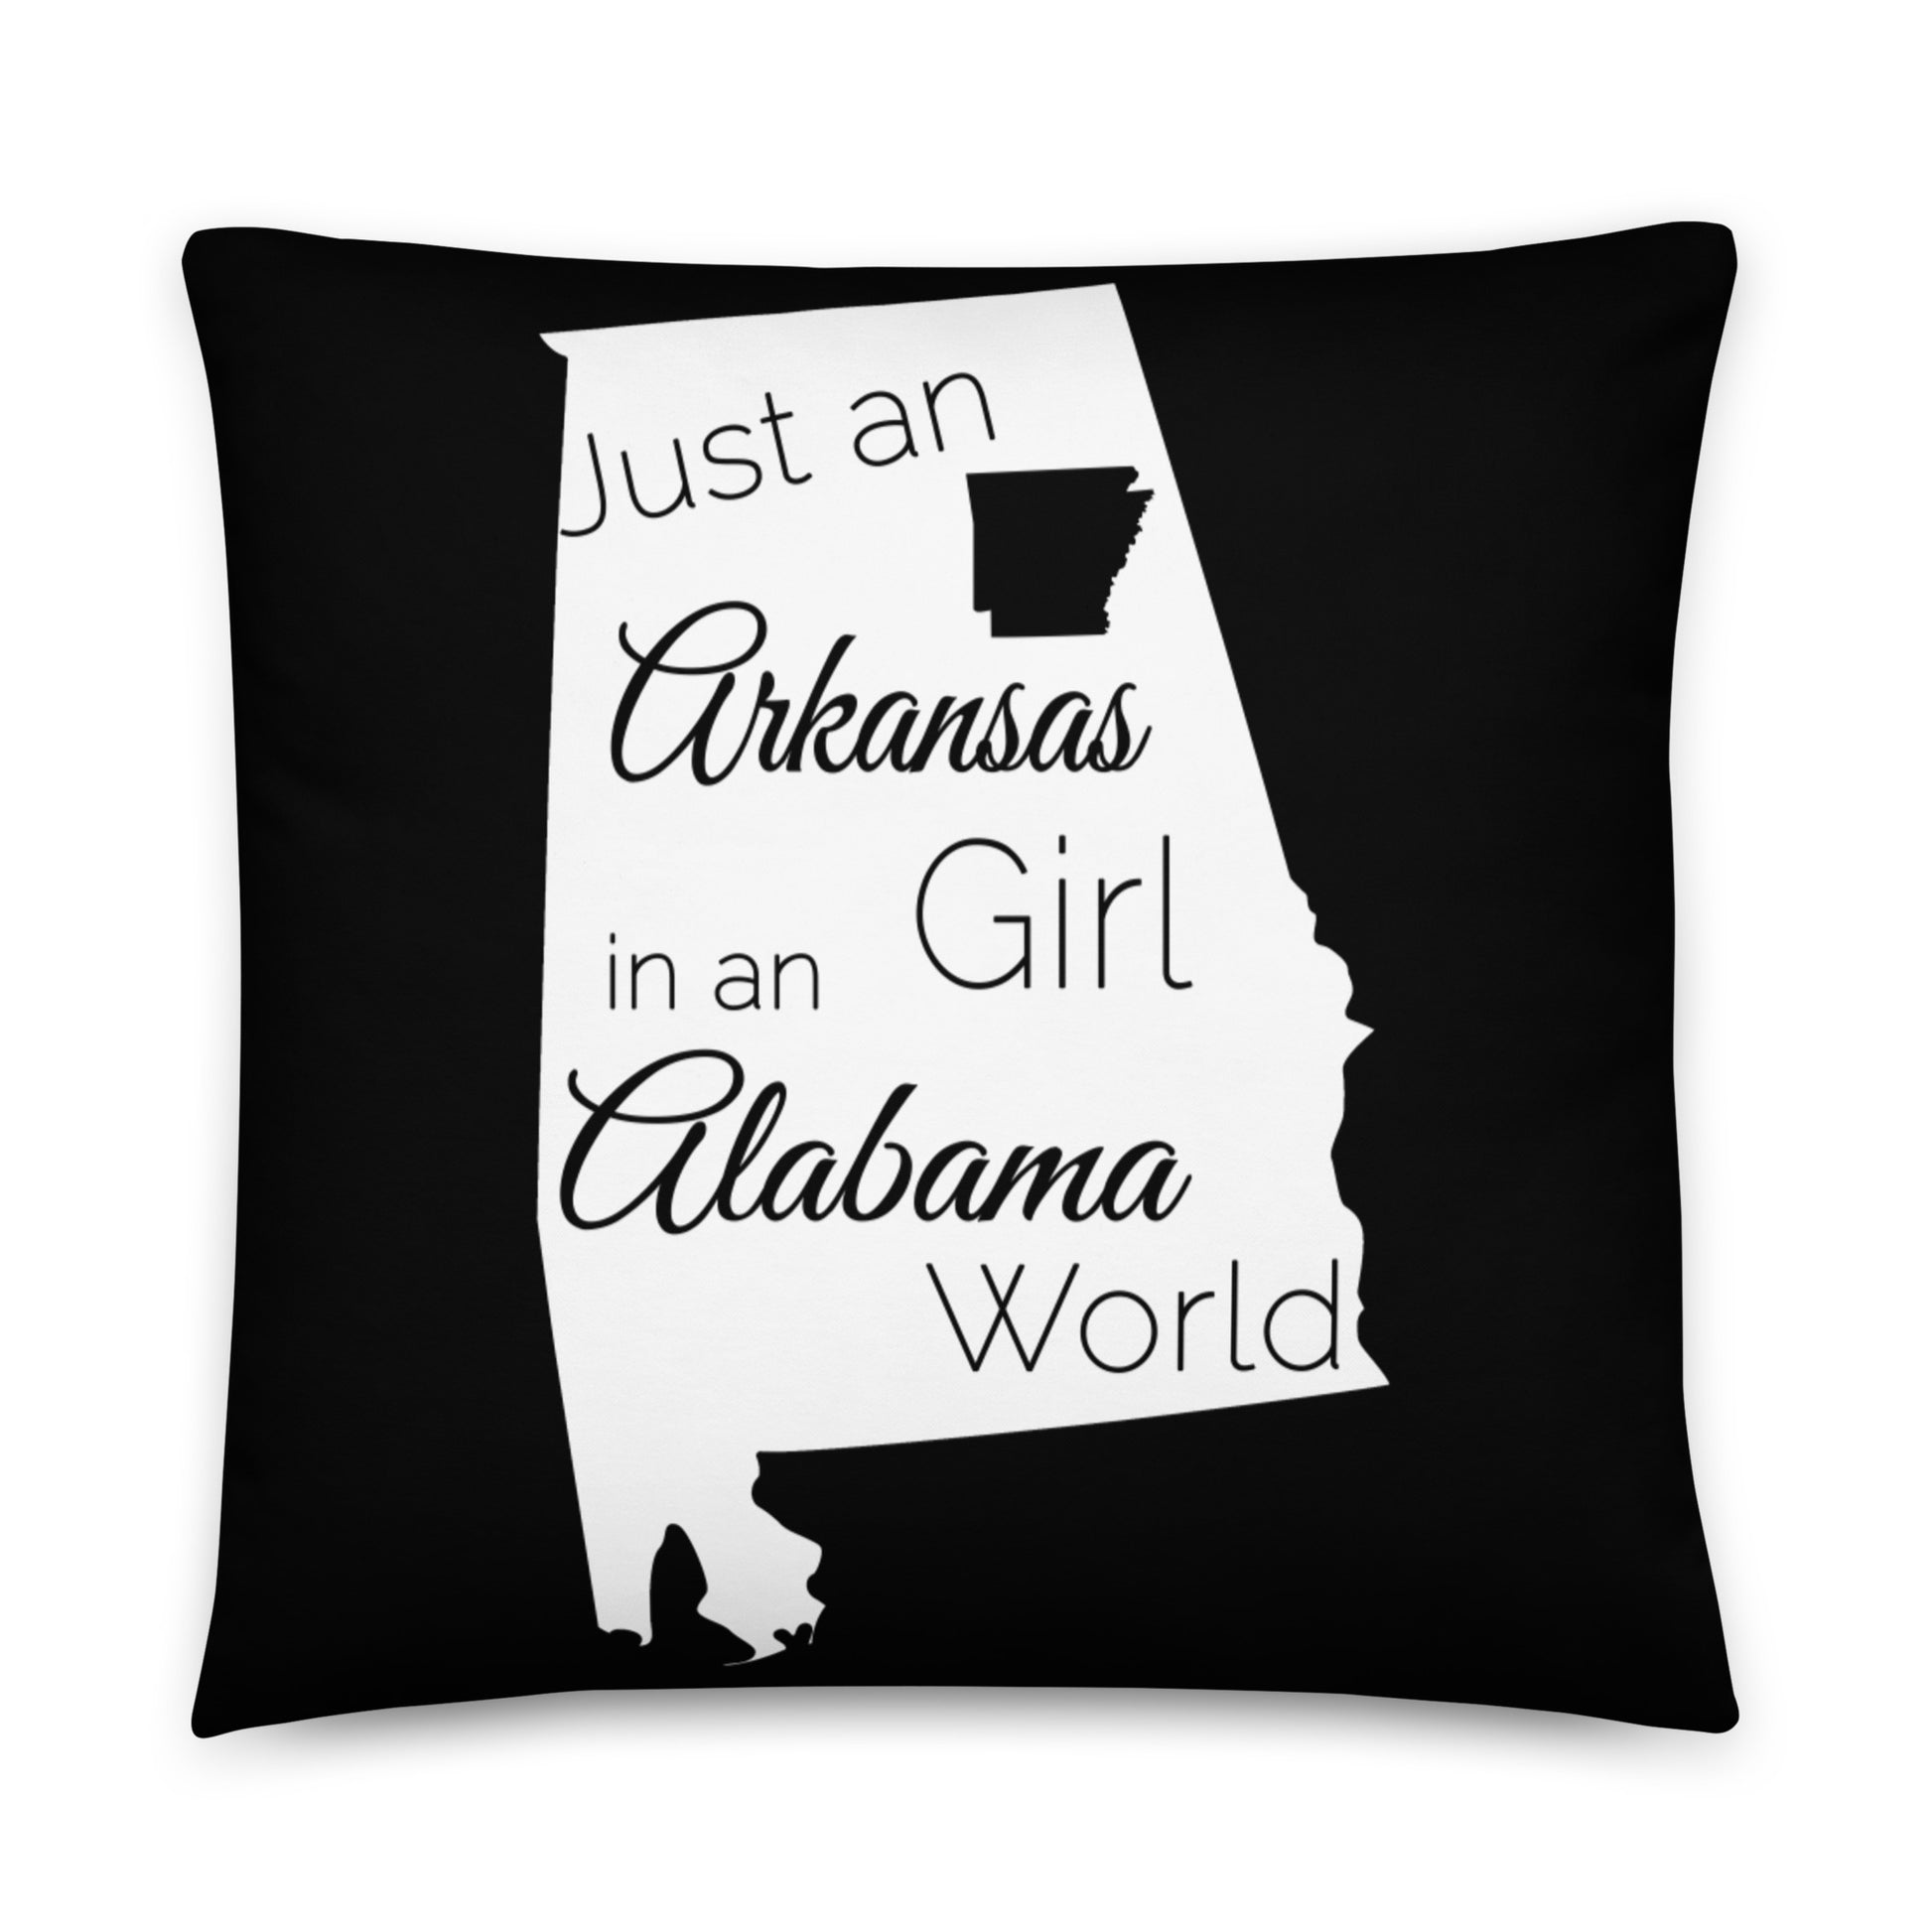 Just an Arkansas Girl in an Alabama World Throw Pillow